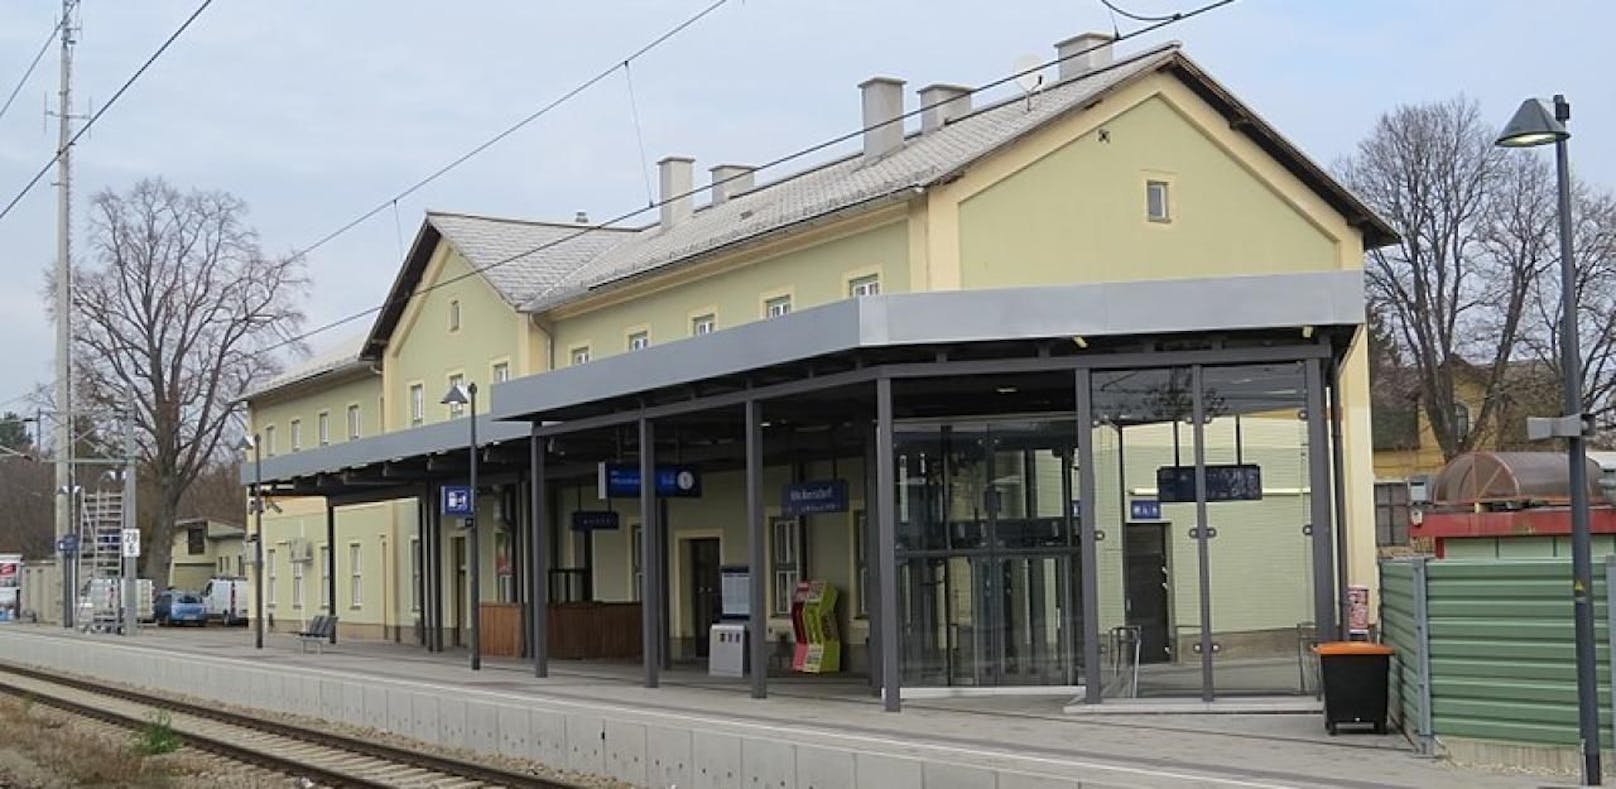 Am Bahnhof in Wolkersdorf kam es zur Tragödie.